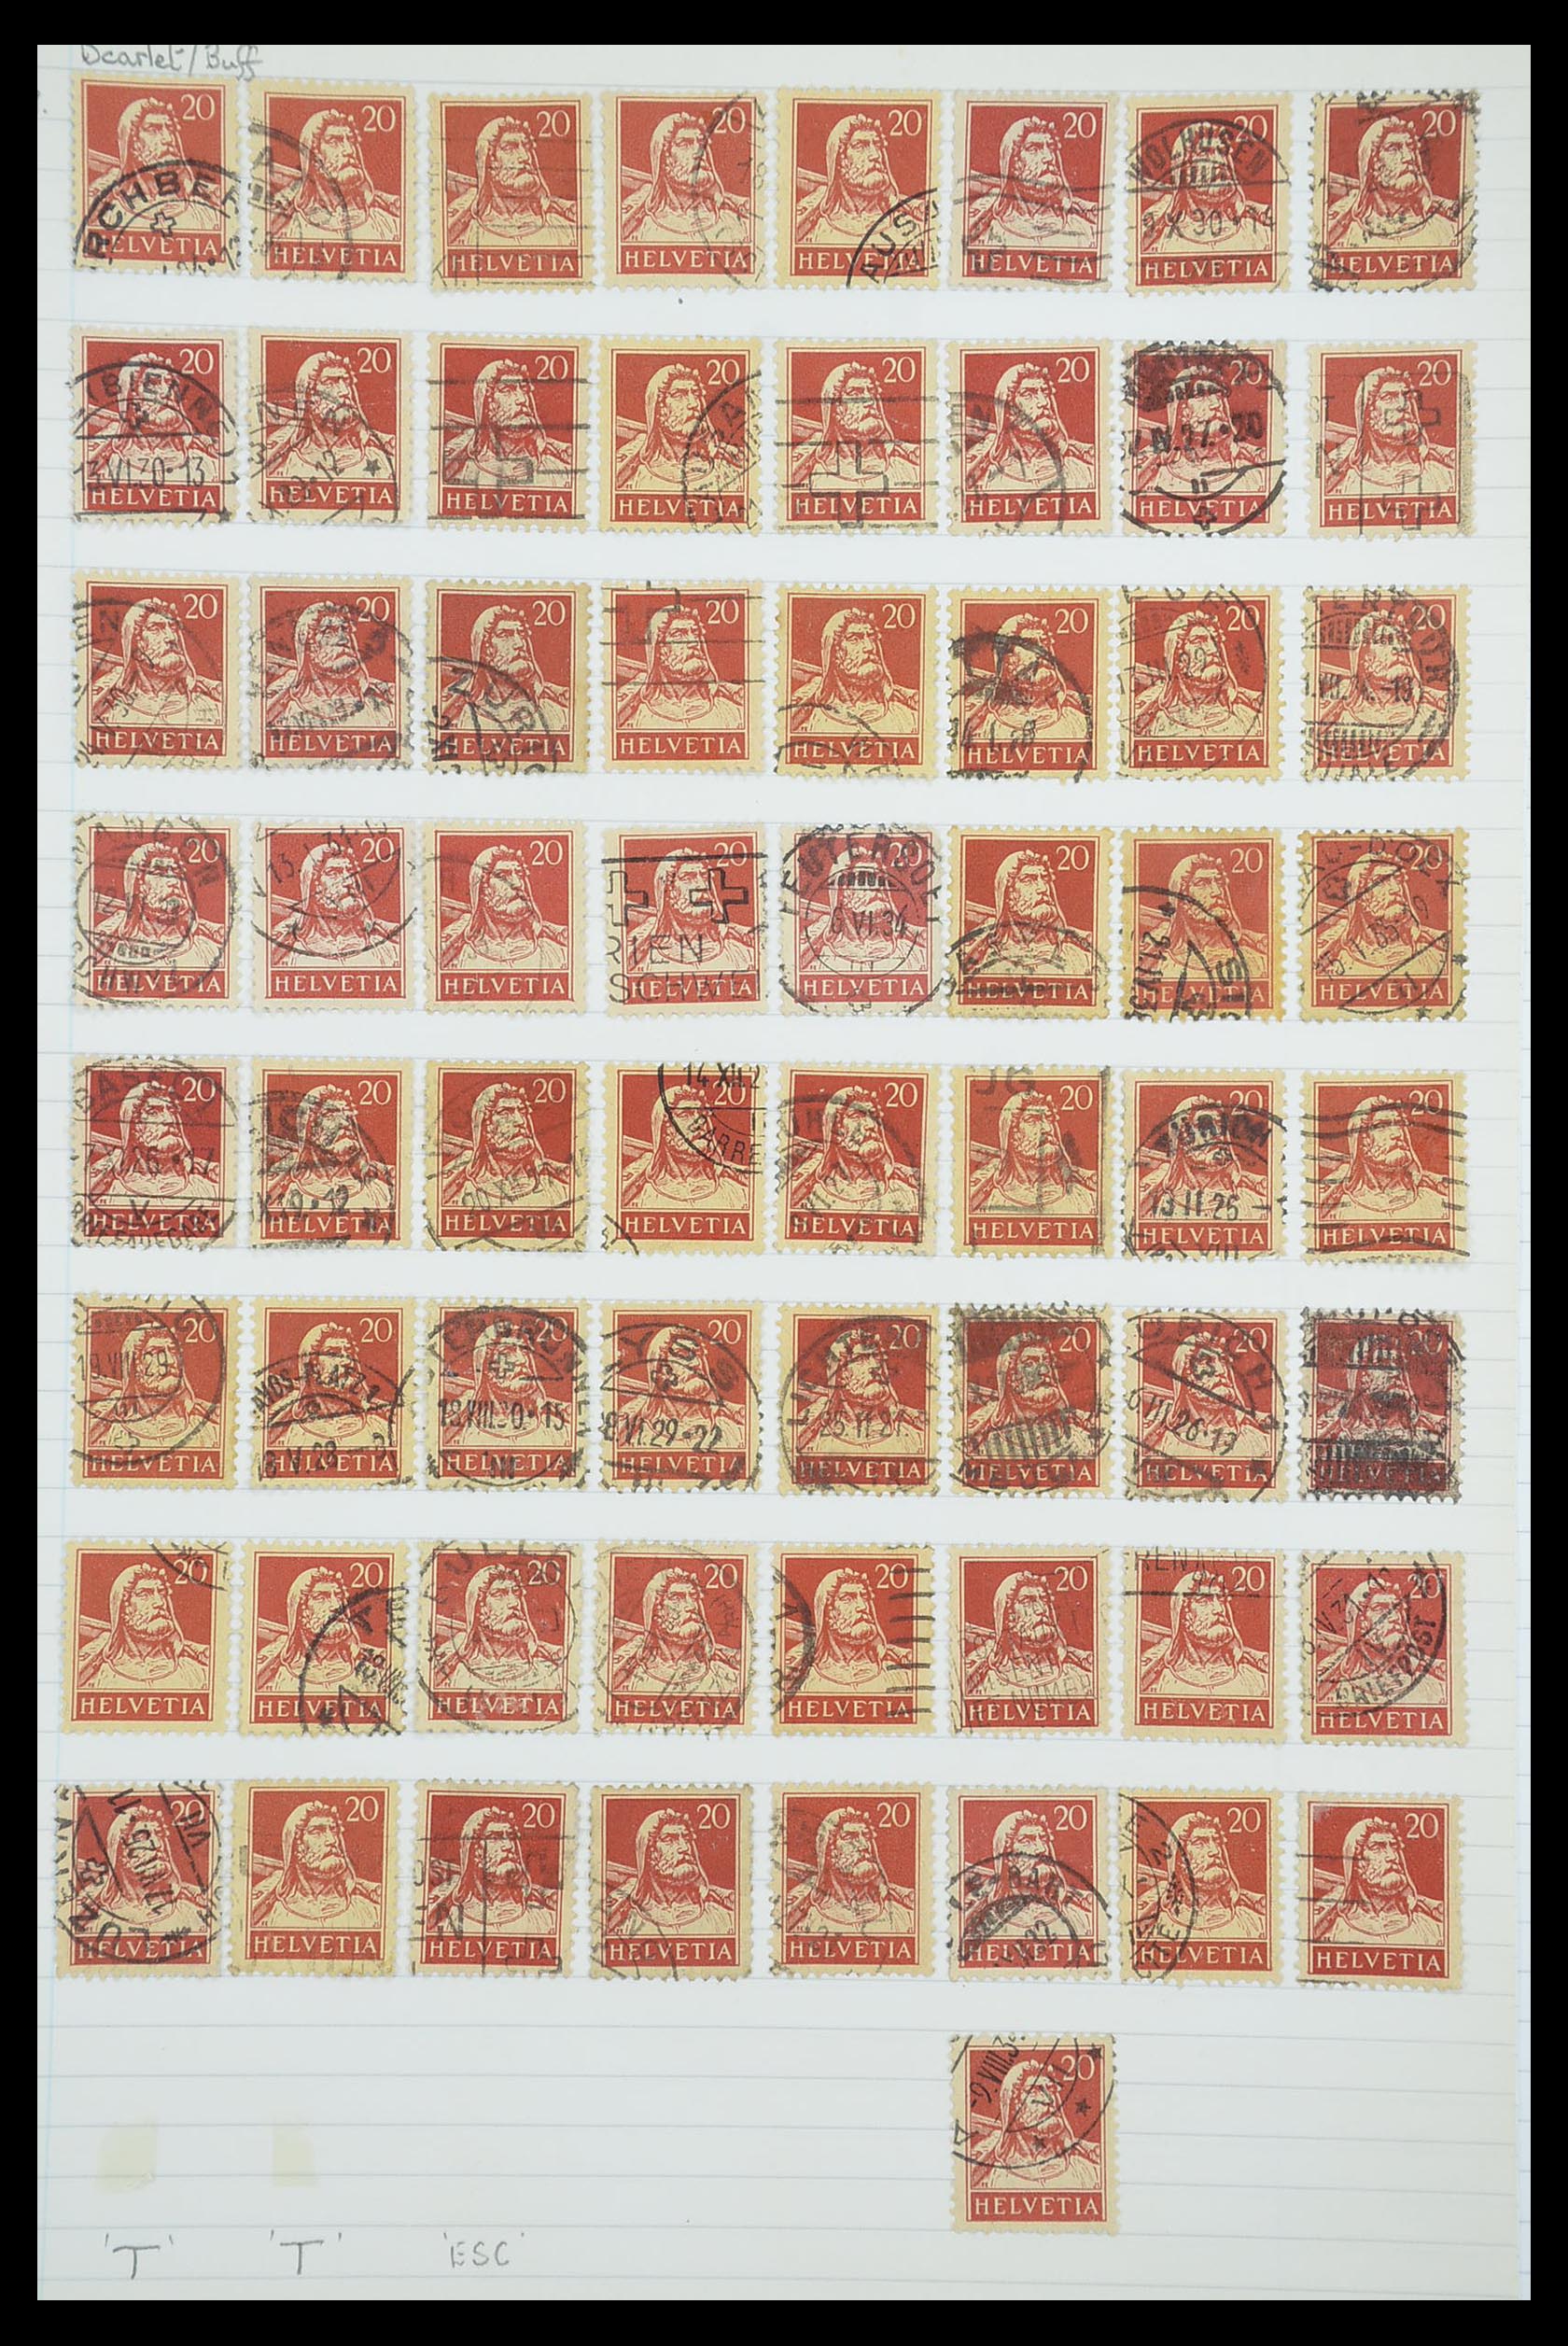 33926 386 - Postzegelverzameling 33926 Zwitserland uitzoekpartij 1850-1997.